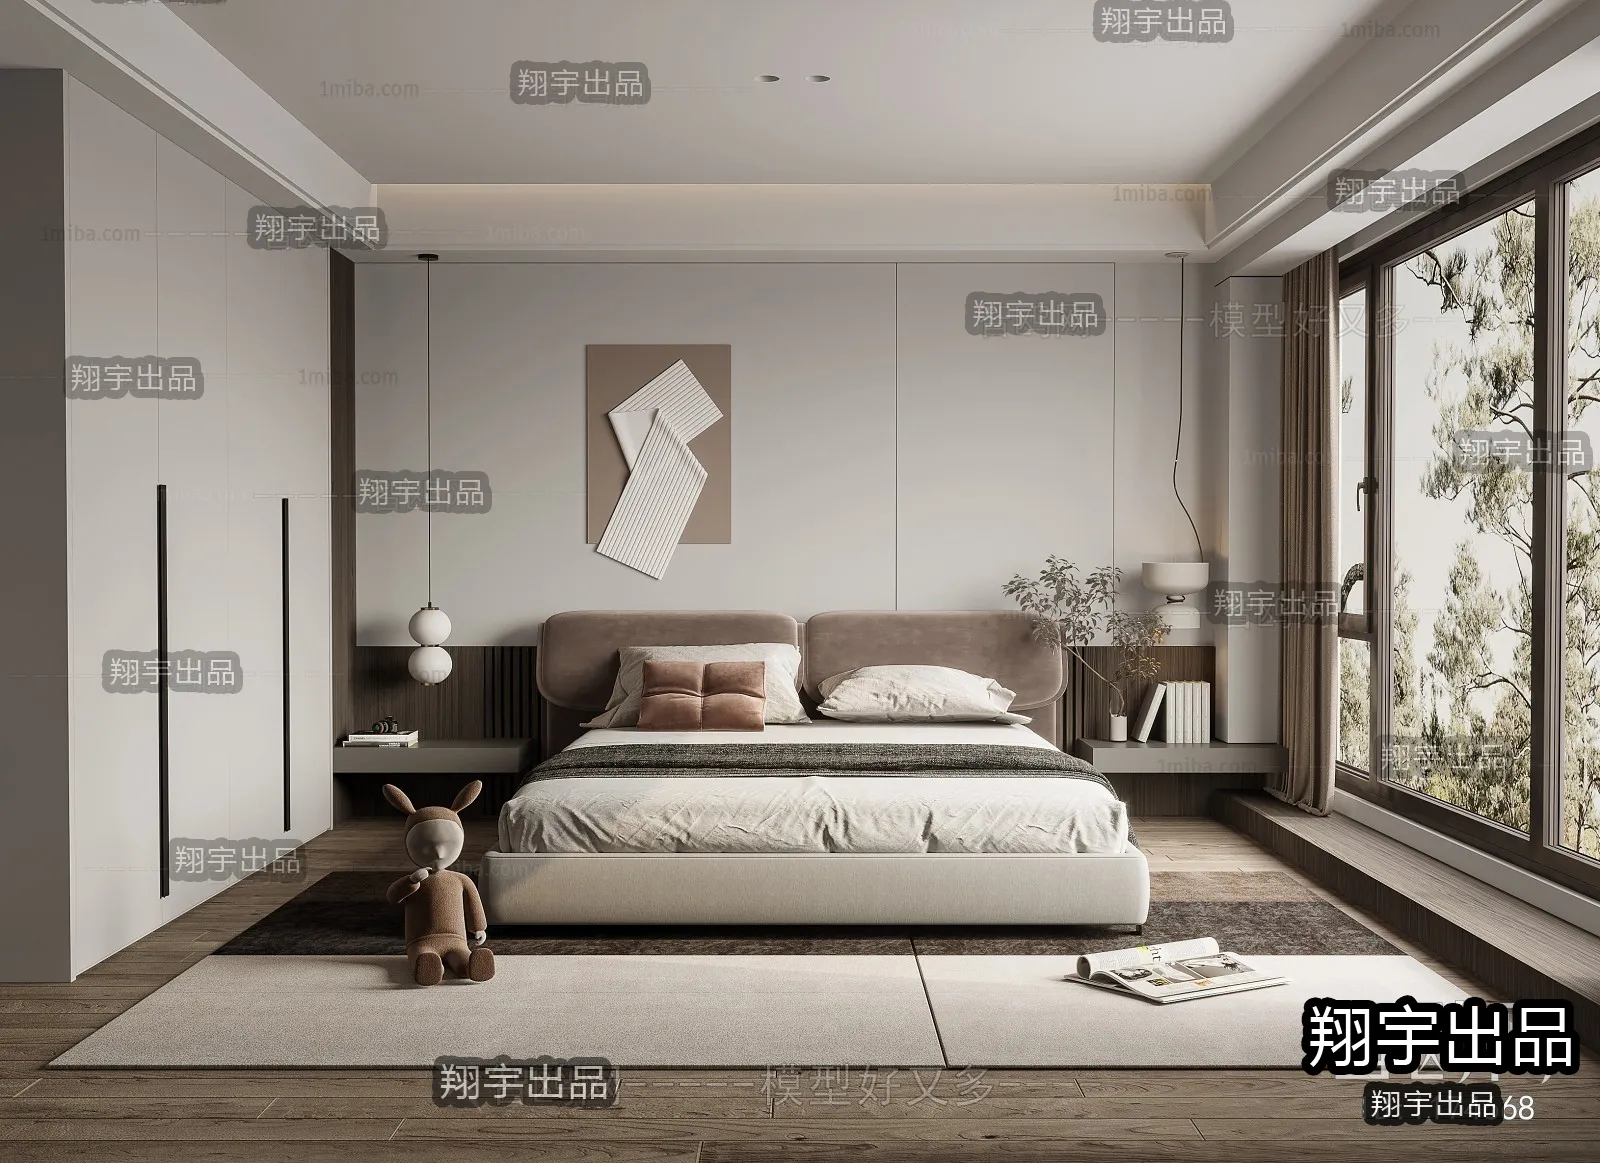 Bedroom – Modern Interior Design – 3D Models – 033